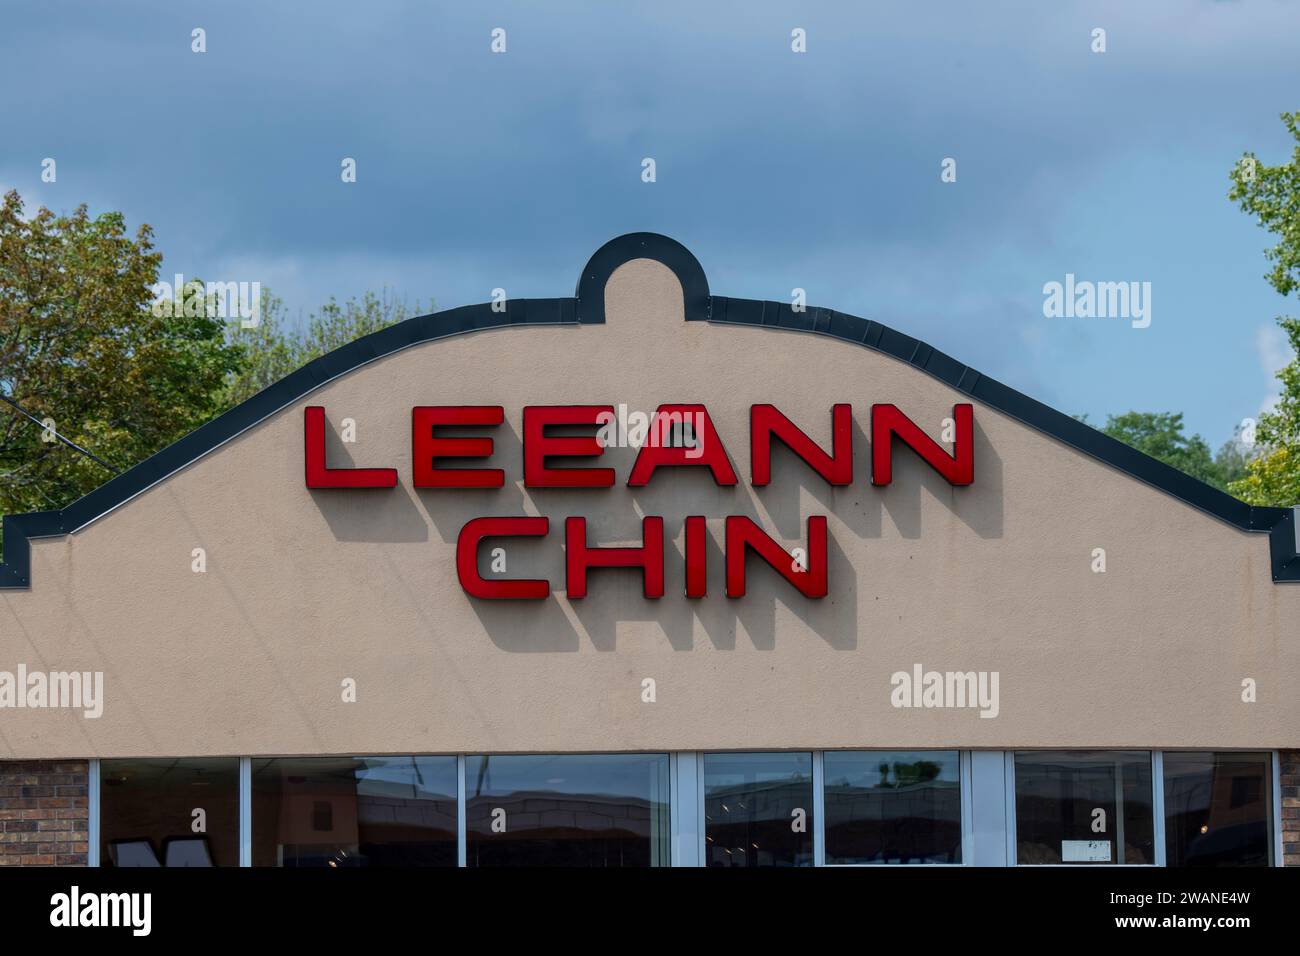 West St. Paul, Minnesota. Leeann Chin est une chaîne asiatique de restauration rapide. La chaîne propose des plats de poulet, de bœuf et de crevettes préparés Banque D'Images